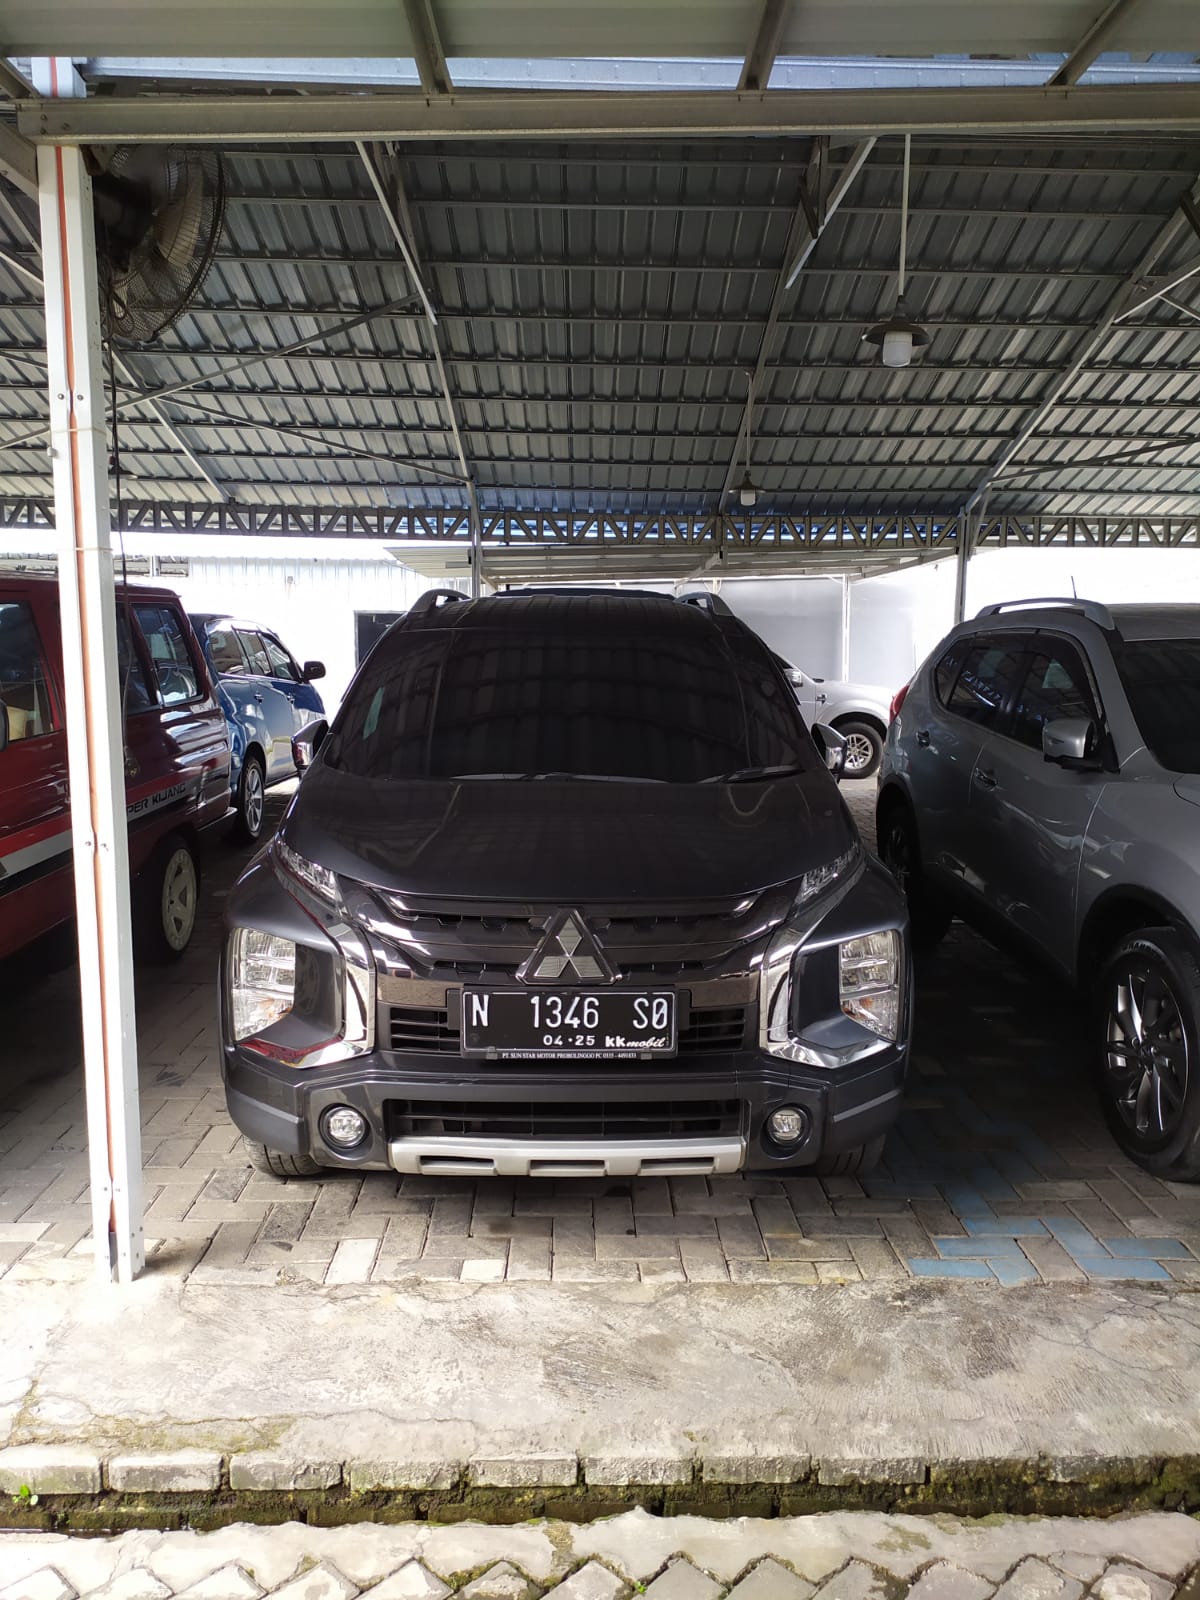 Mobil Xpander Bekas Surabaya. Showroom Mobil Bekas Terbesar Surabaya Akui Xpander & Pajero